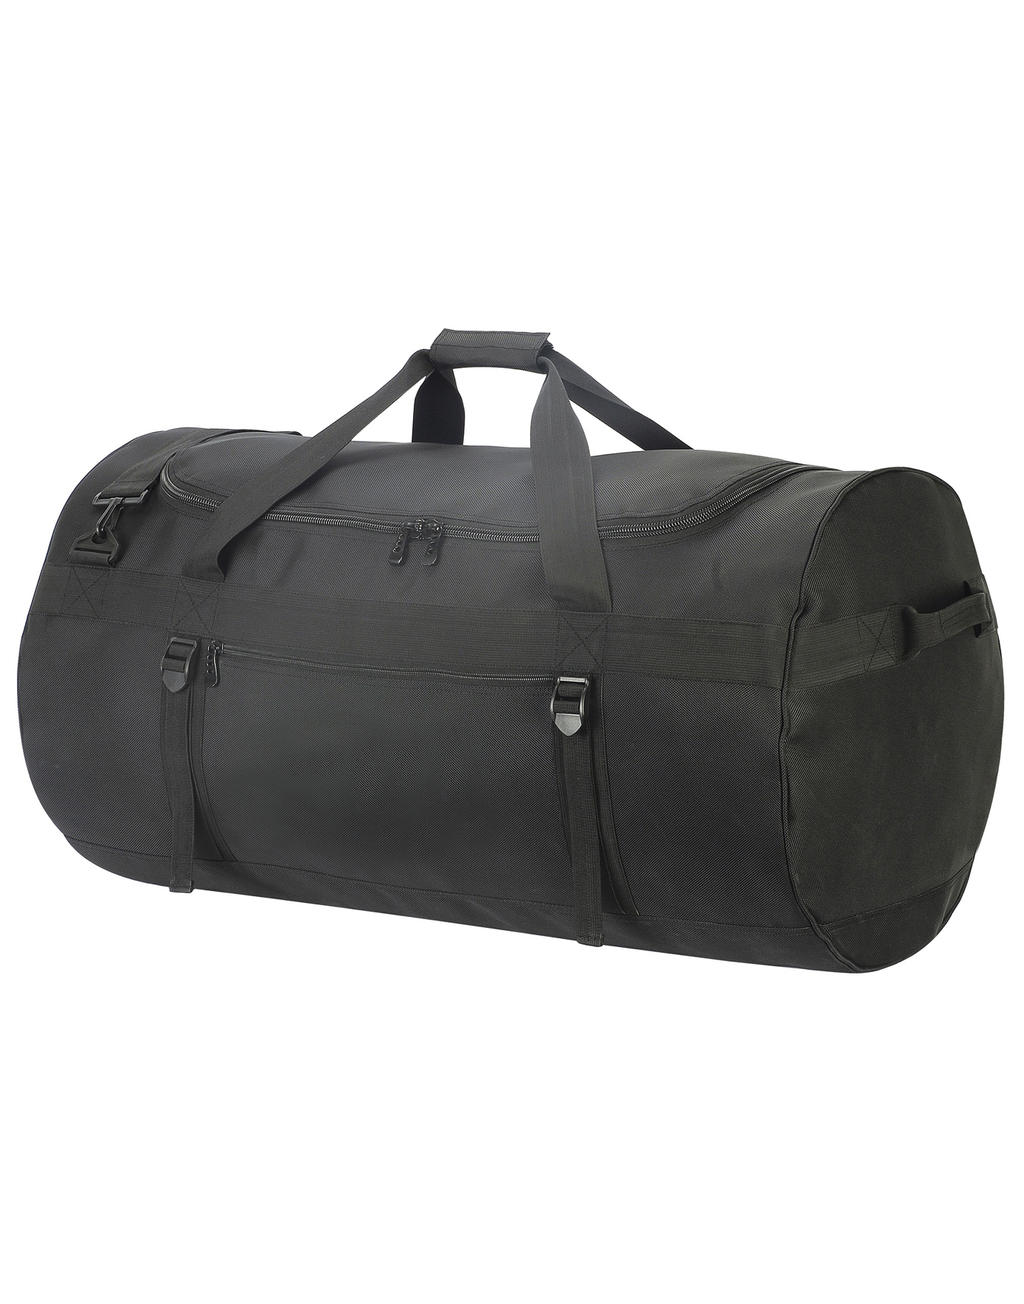  Atlantic Oversized Kitbag in Farbe Black